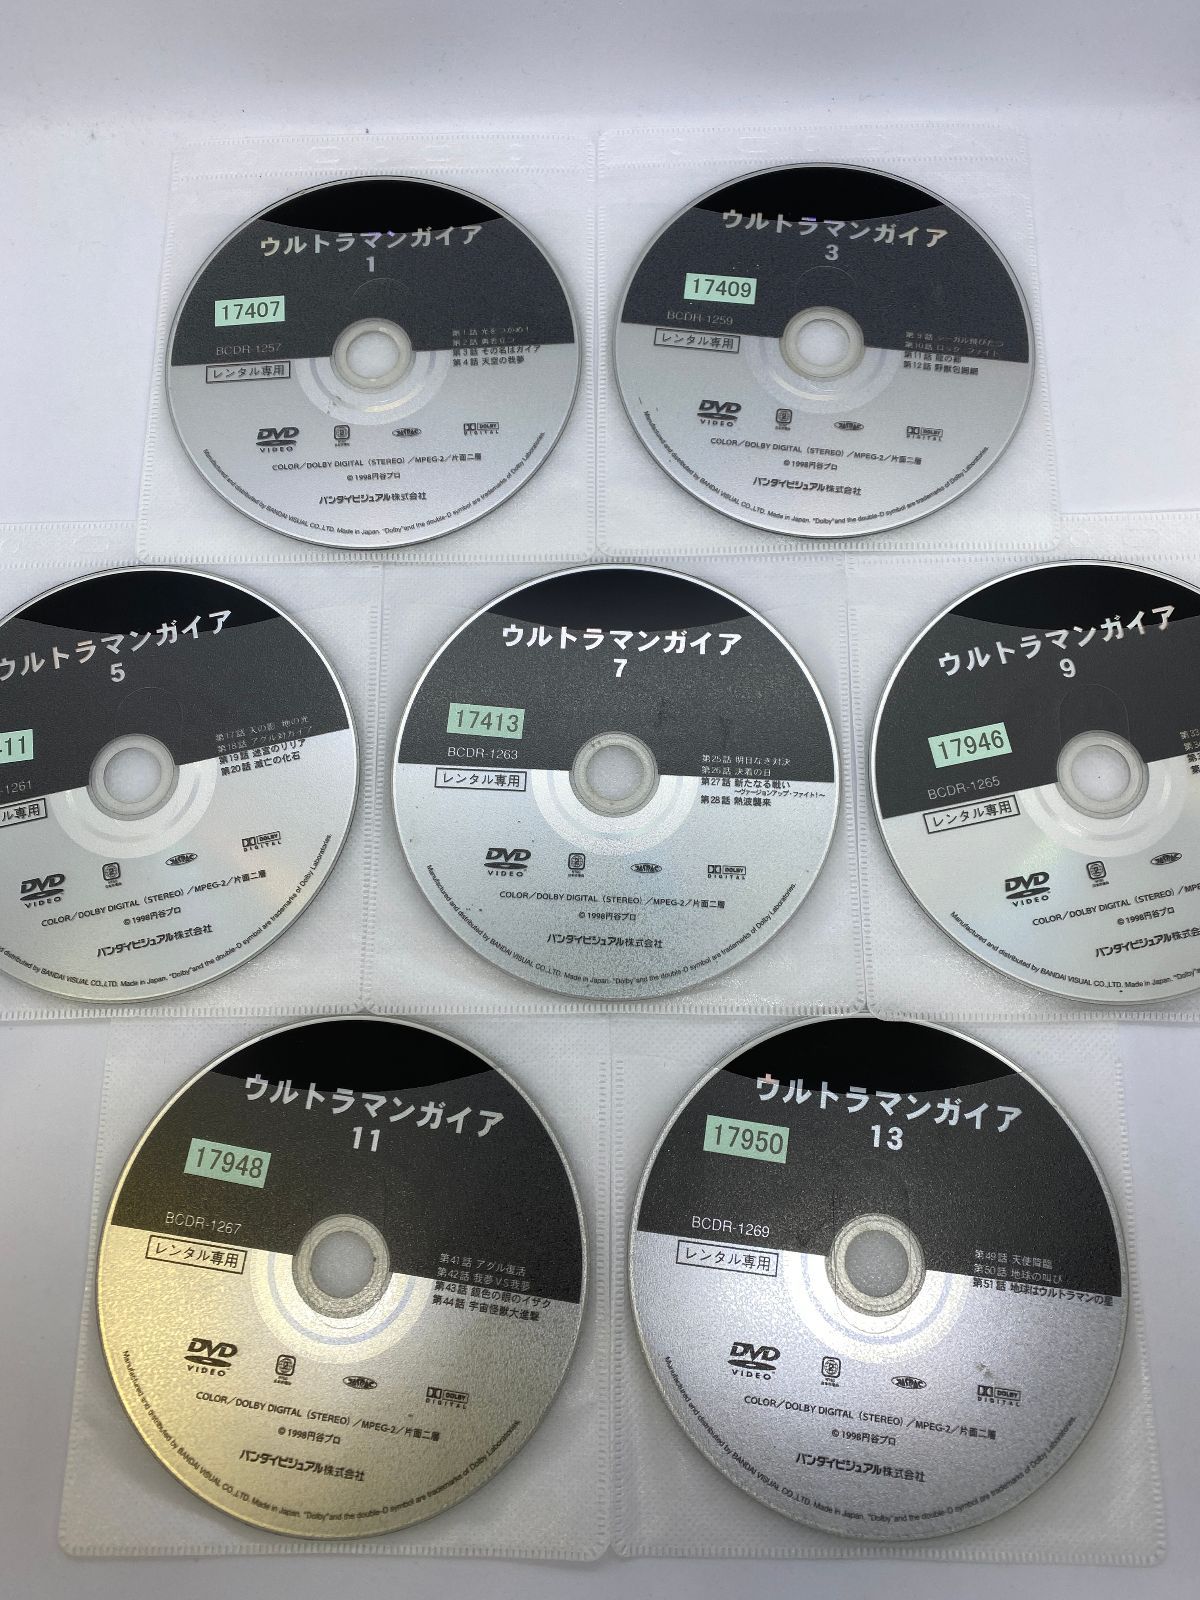 ウルトラマンガイア 全13巻+スペシャル 14枚セット DVD レンタル落ち 